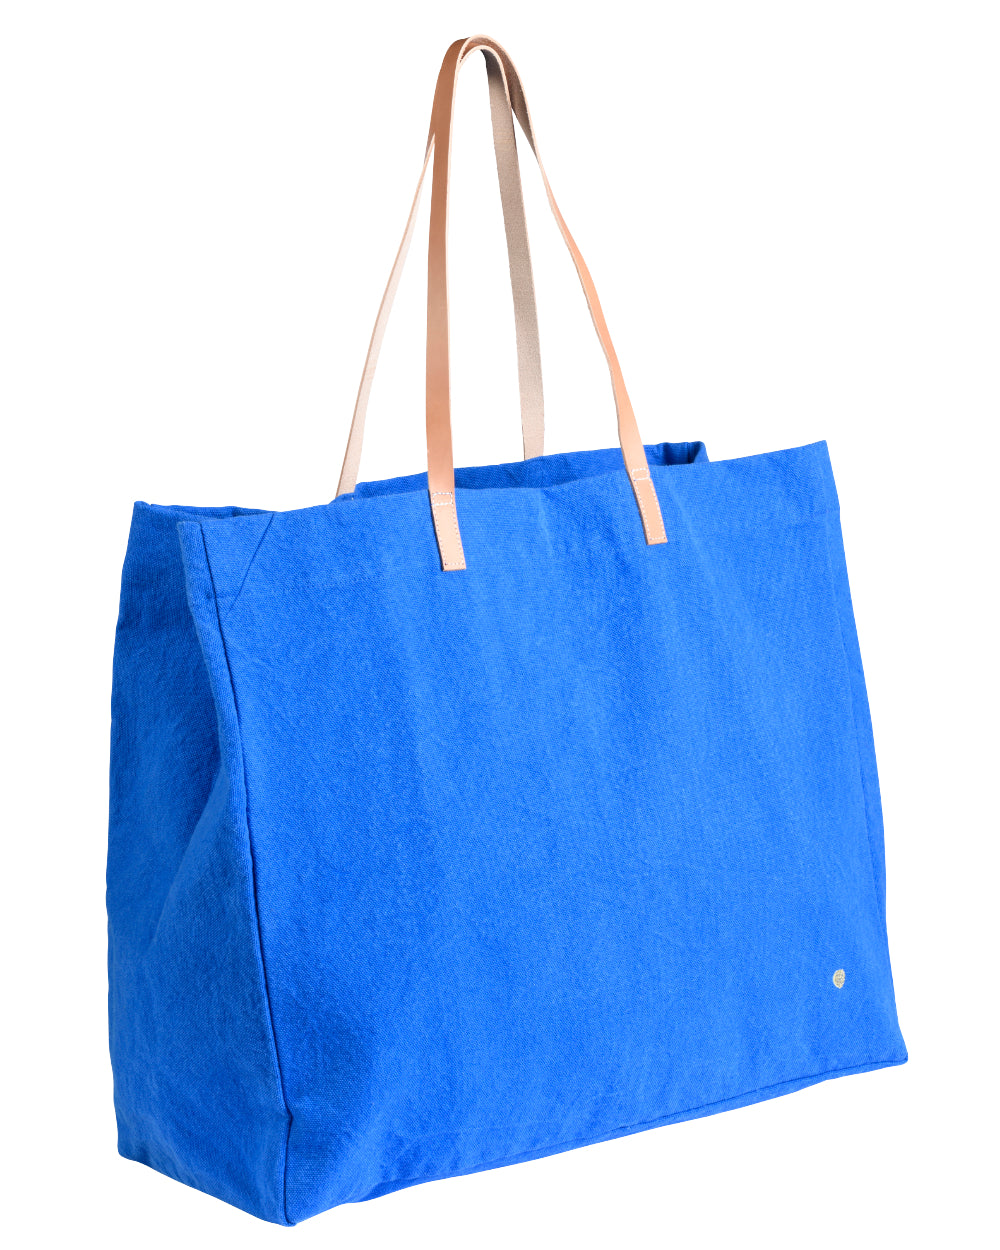 La Cerise - Shopping Bag - Iona Bleu Mecano